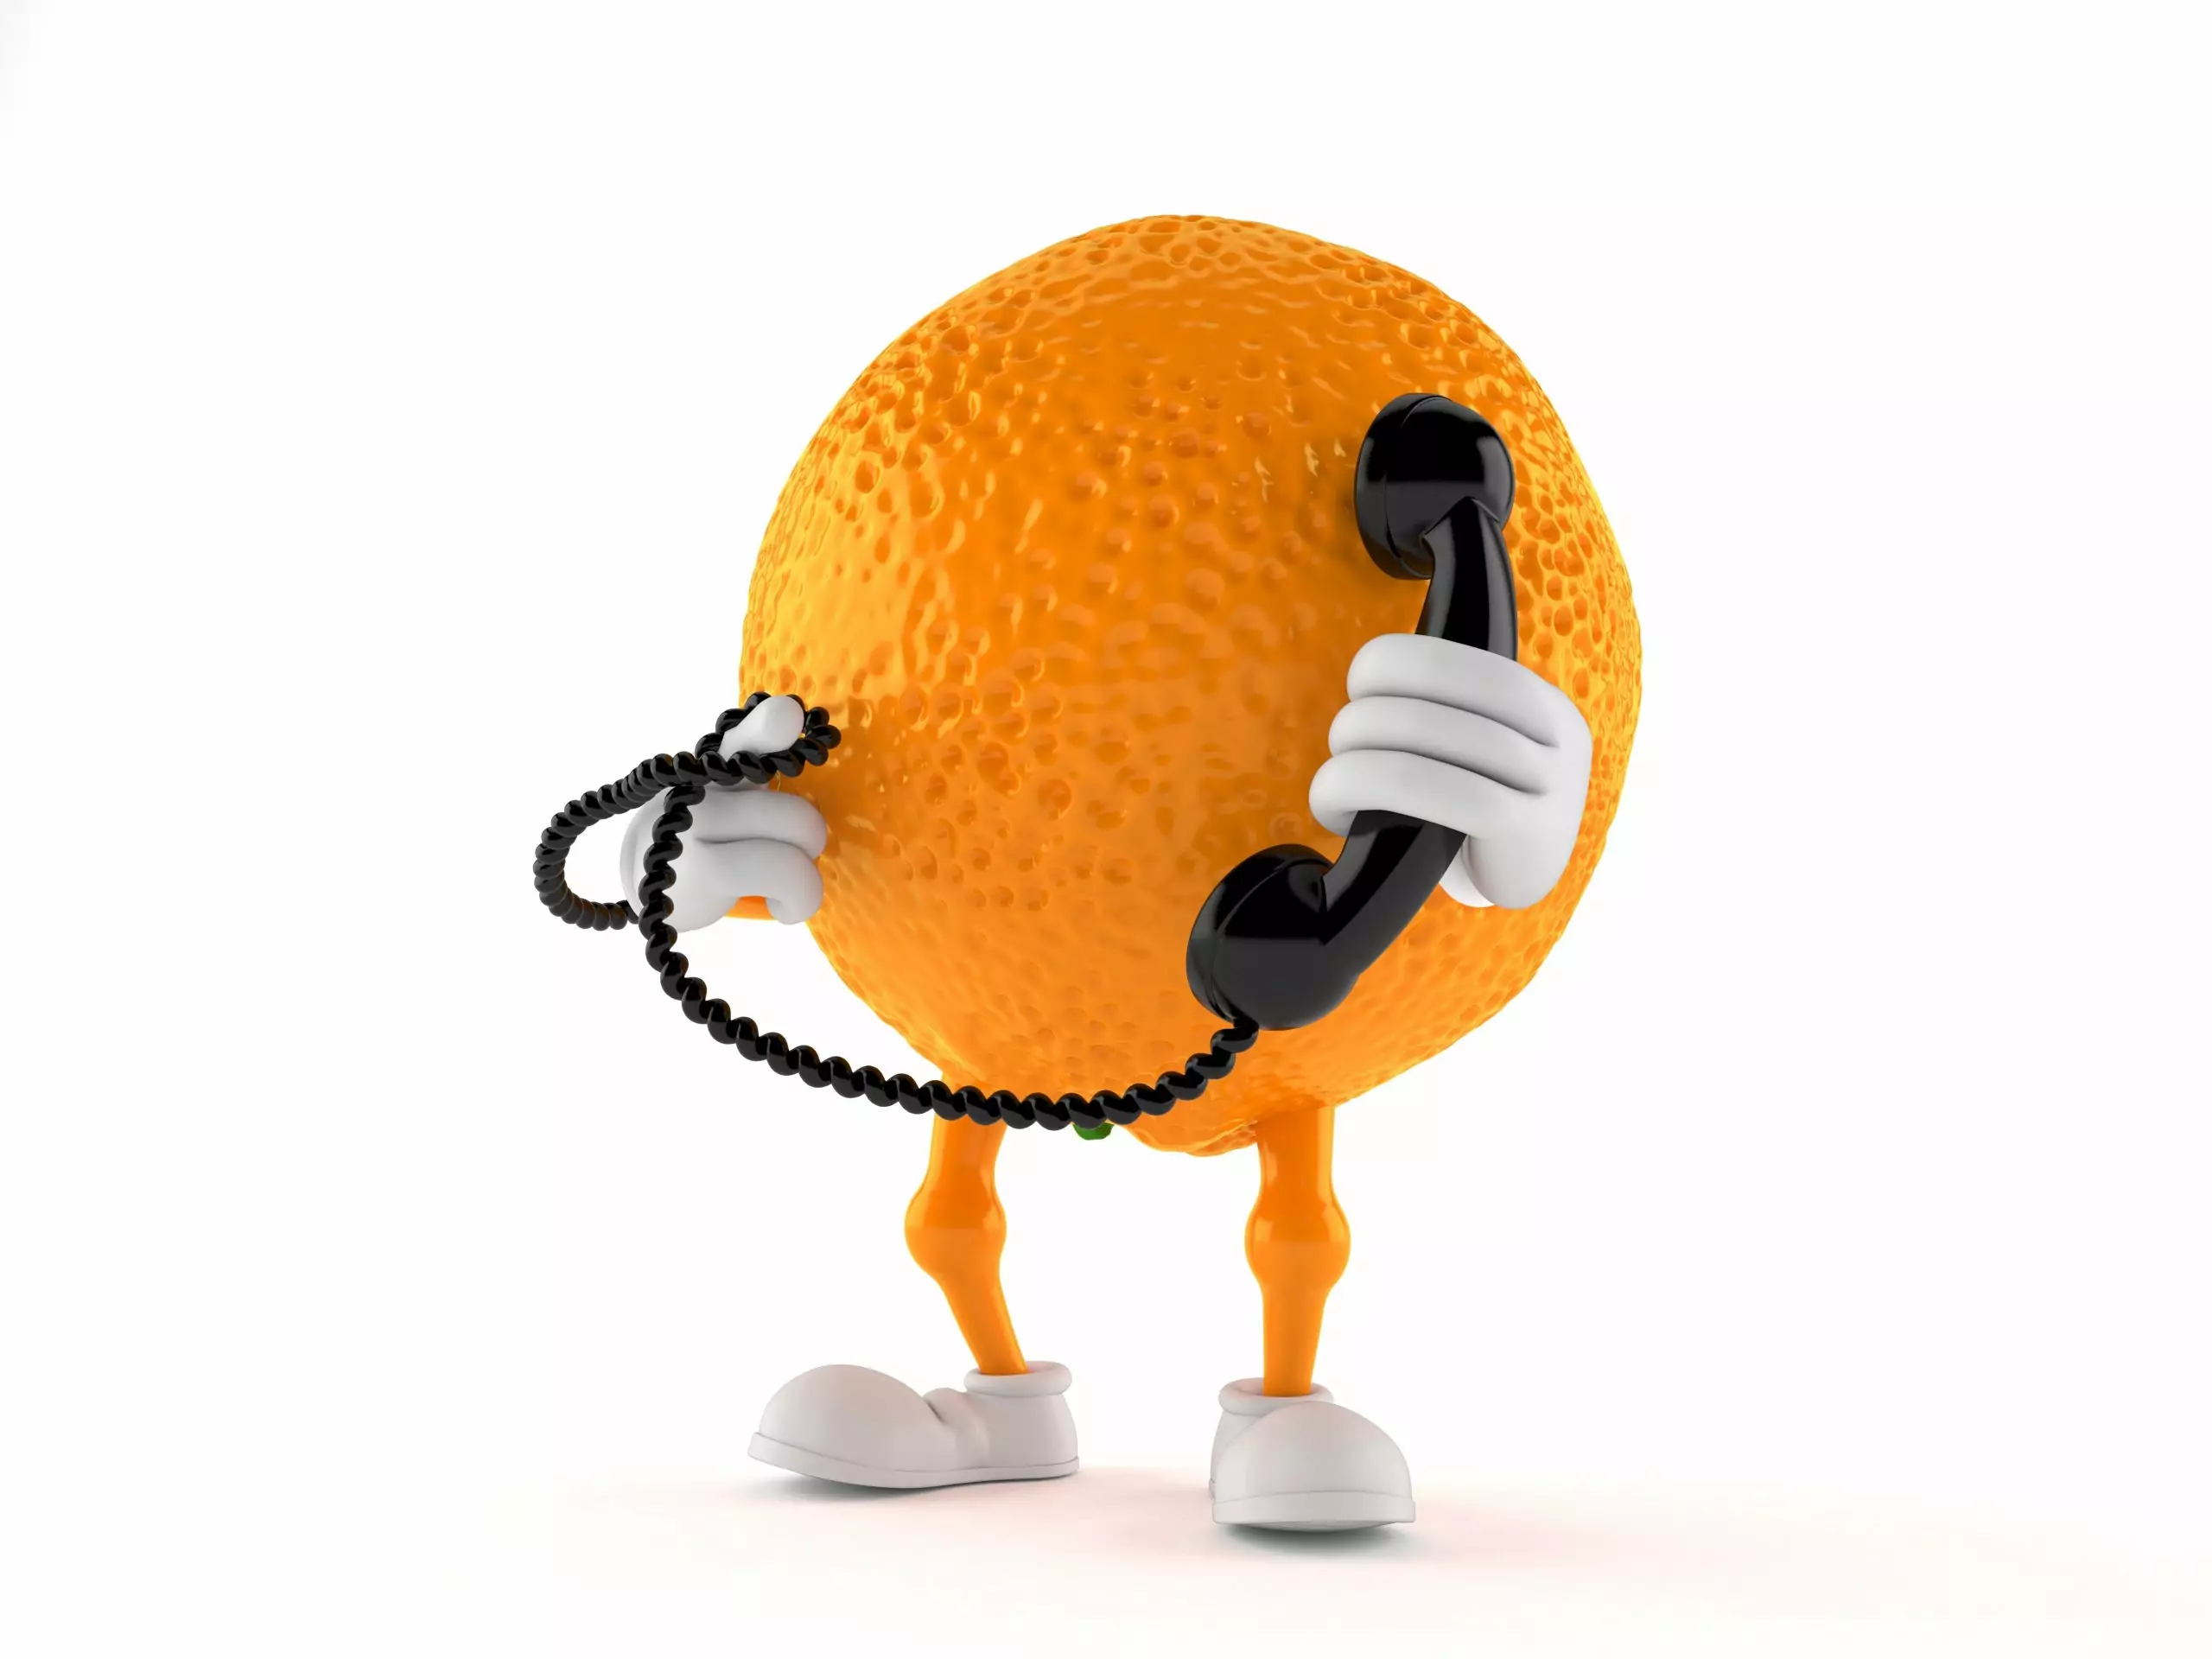 Orange character holding a telephone handset isolated on white background